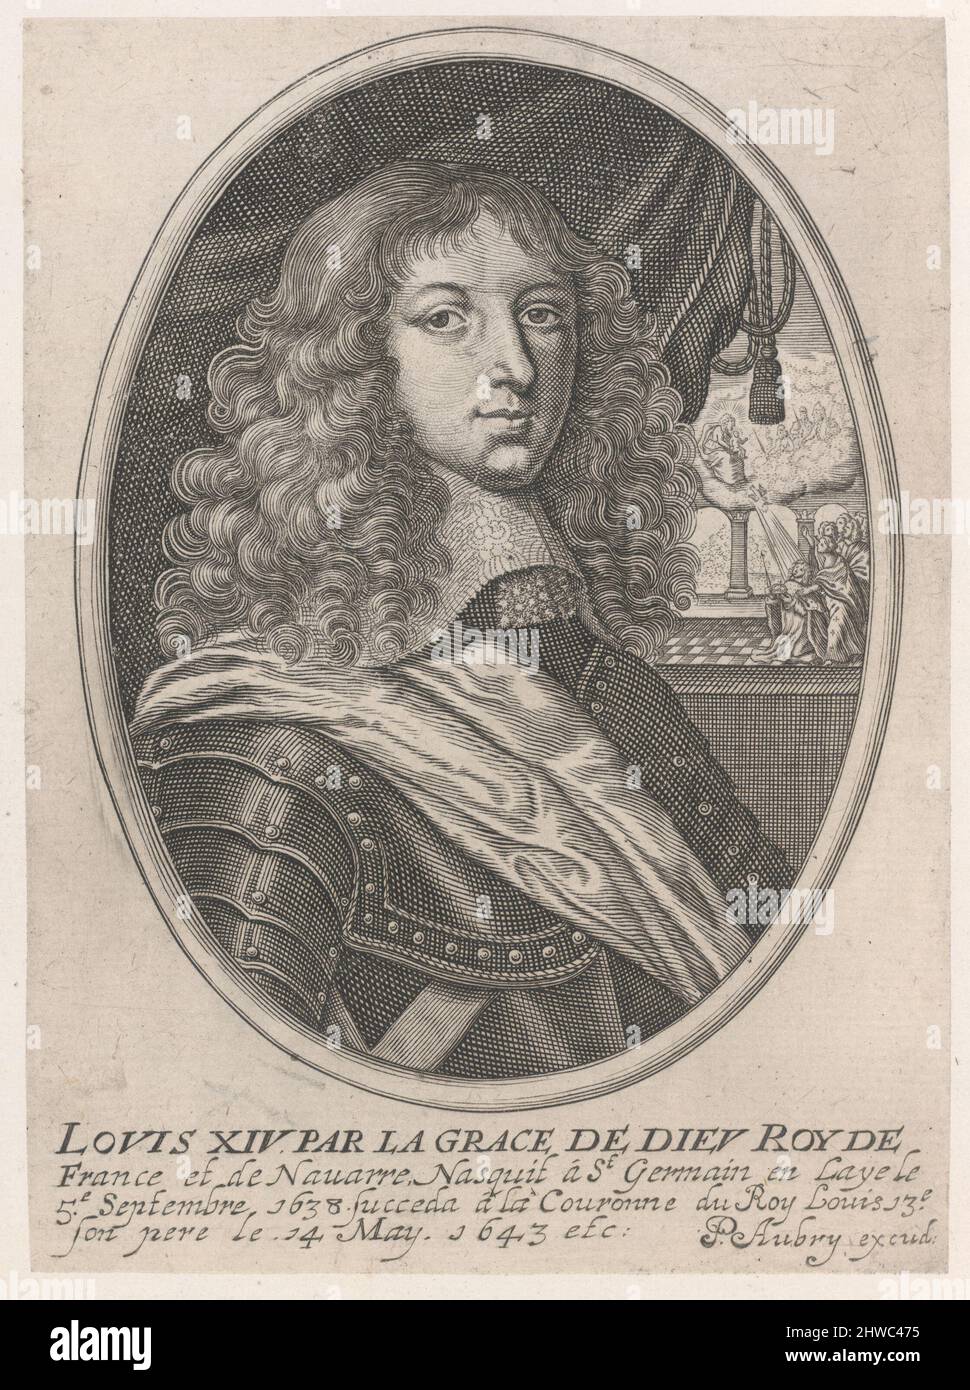 Portrait of Louis XIV (Louis XIV par la Grace de Dieu Roy de France et de Navarre).  Artist: Pierre Aubry, French, 1610–1686 Stock Photo